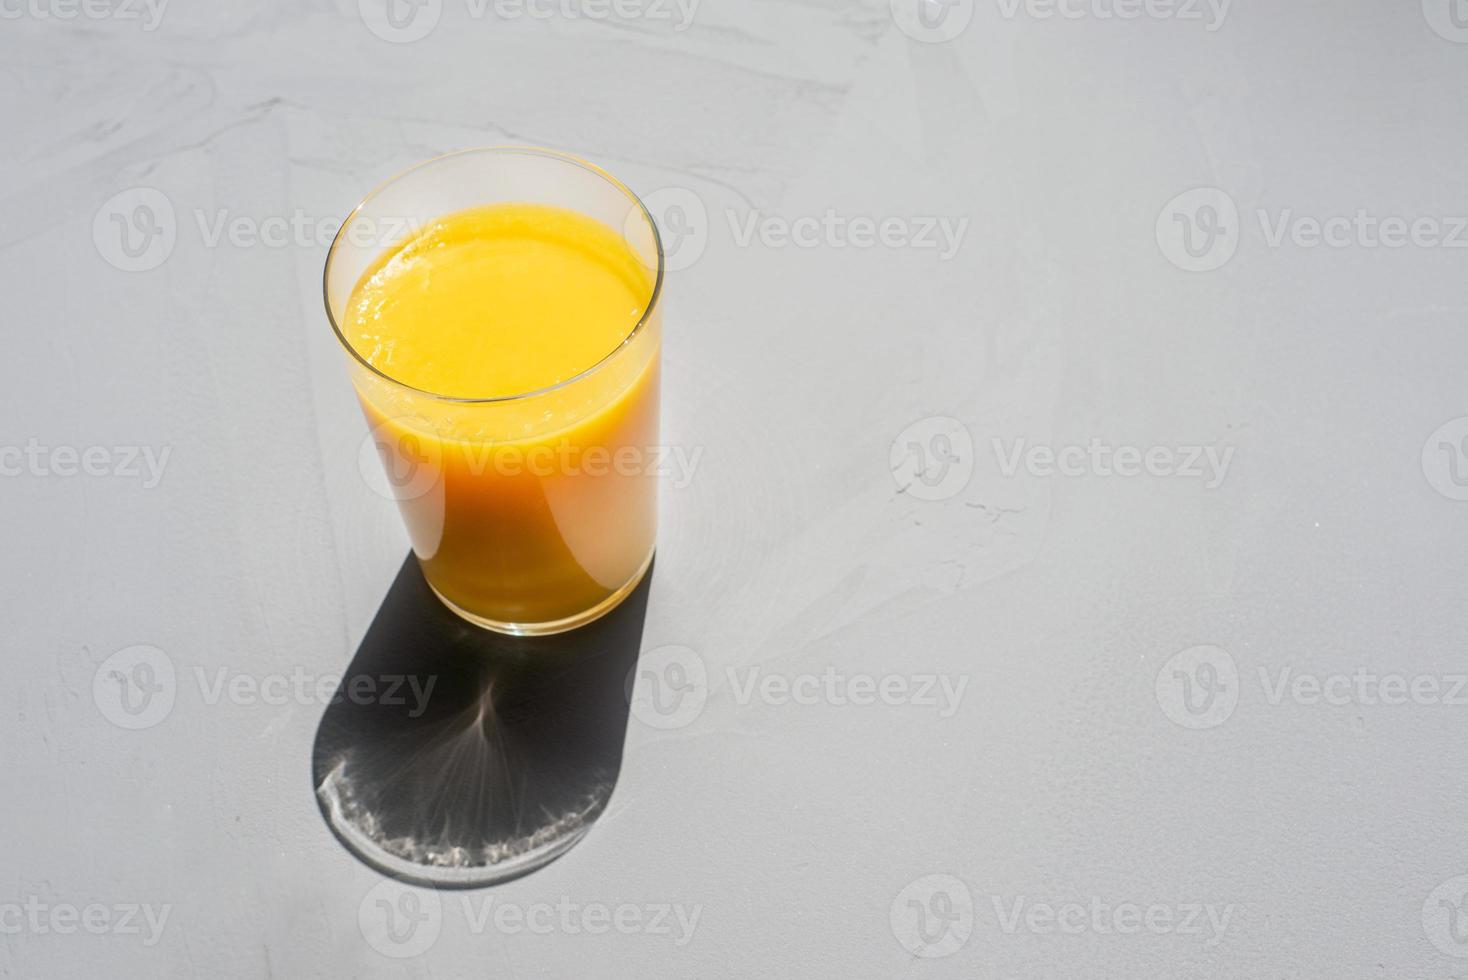 en glas av orange juice på en grå betong bakgrund i ljus solljus foto